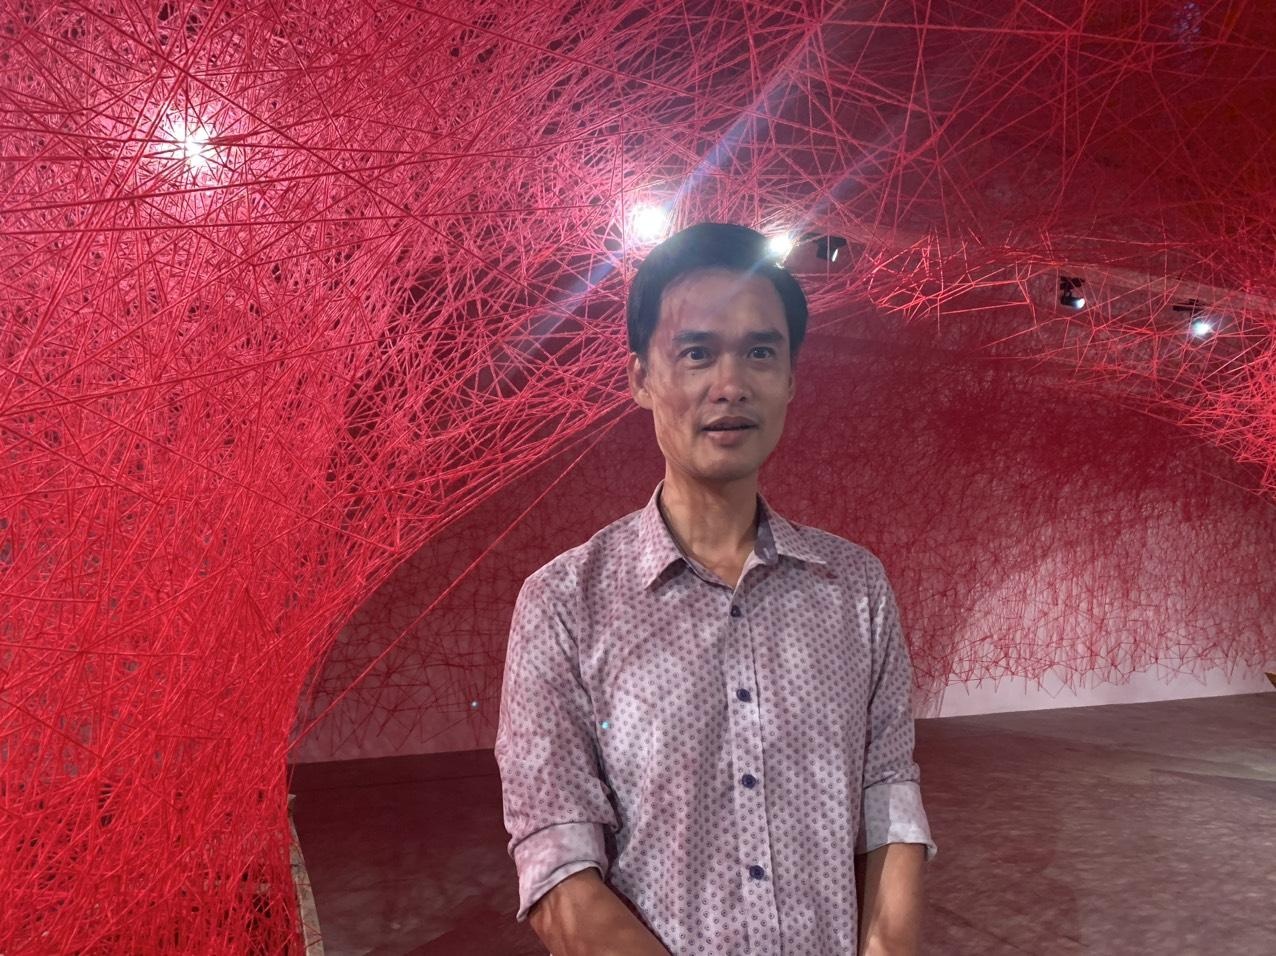 Nghệ sĩ nổi tiếng Chiharu Shiota làm triển lãm từ len, thuyền cũ ở Việt Nam - 3